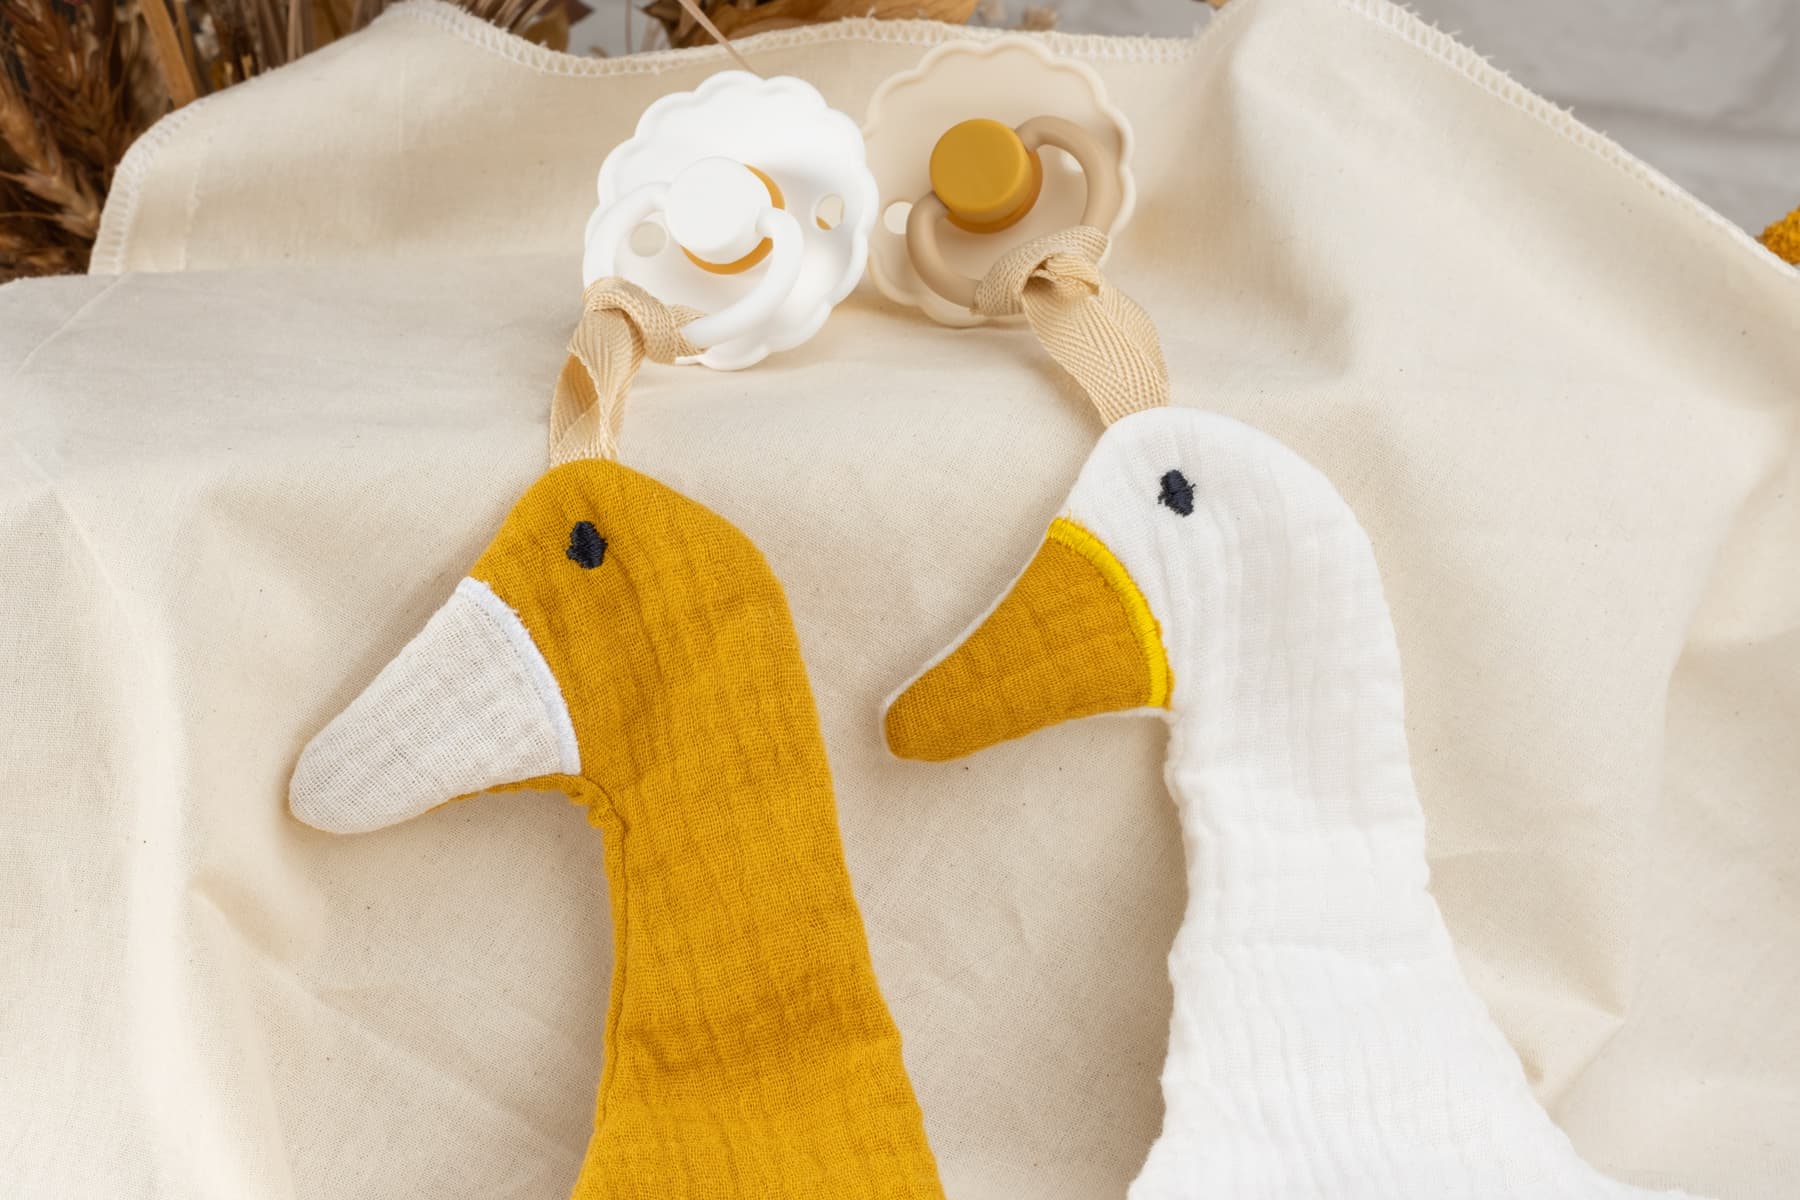 Nuckelkette aus Musselin, Anhänger für Nuckelkette personalisiert mit Wunschnamen, Motiven Ente und Reh. Für Babys, Jungs, Mädchen. (Weiß Ente)